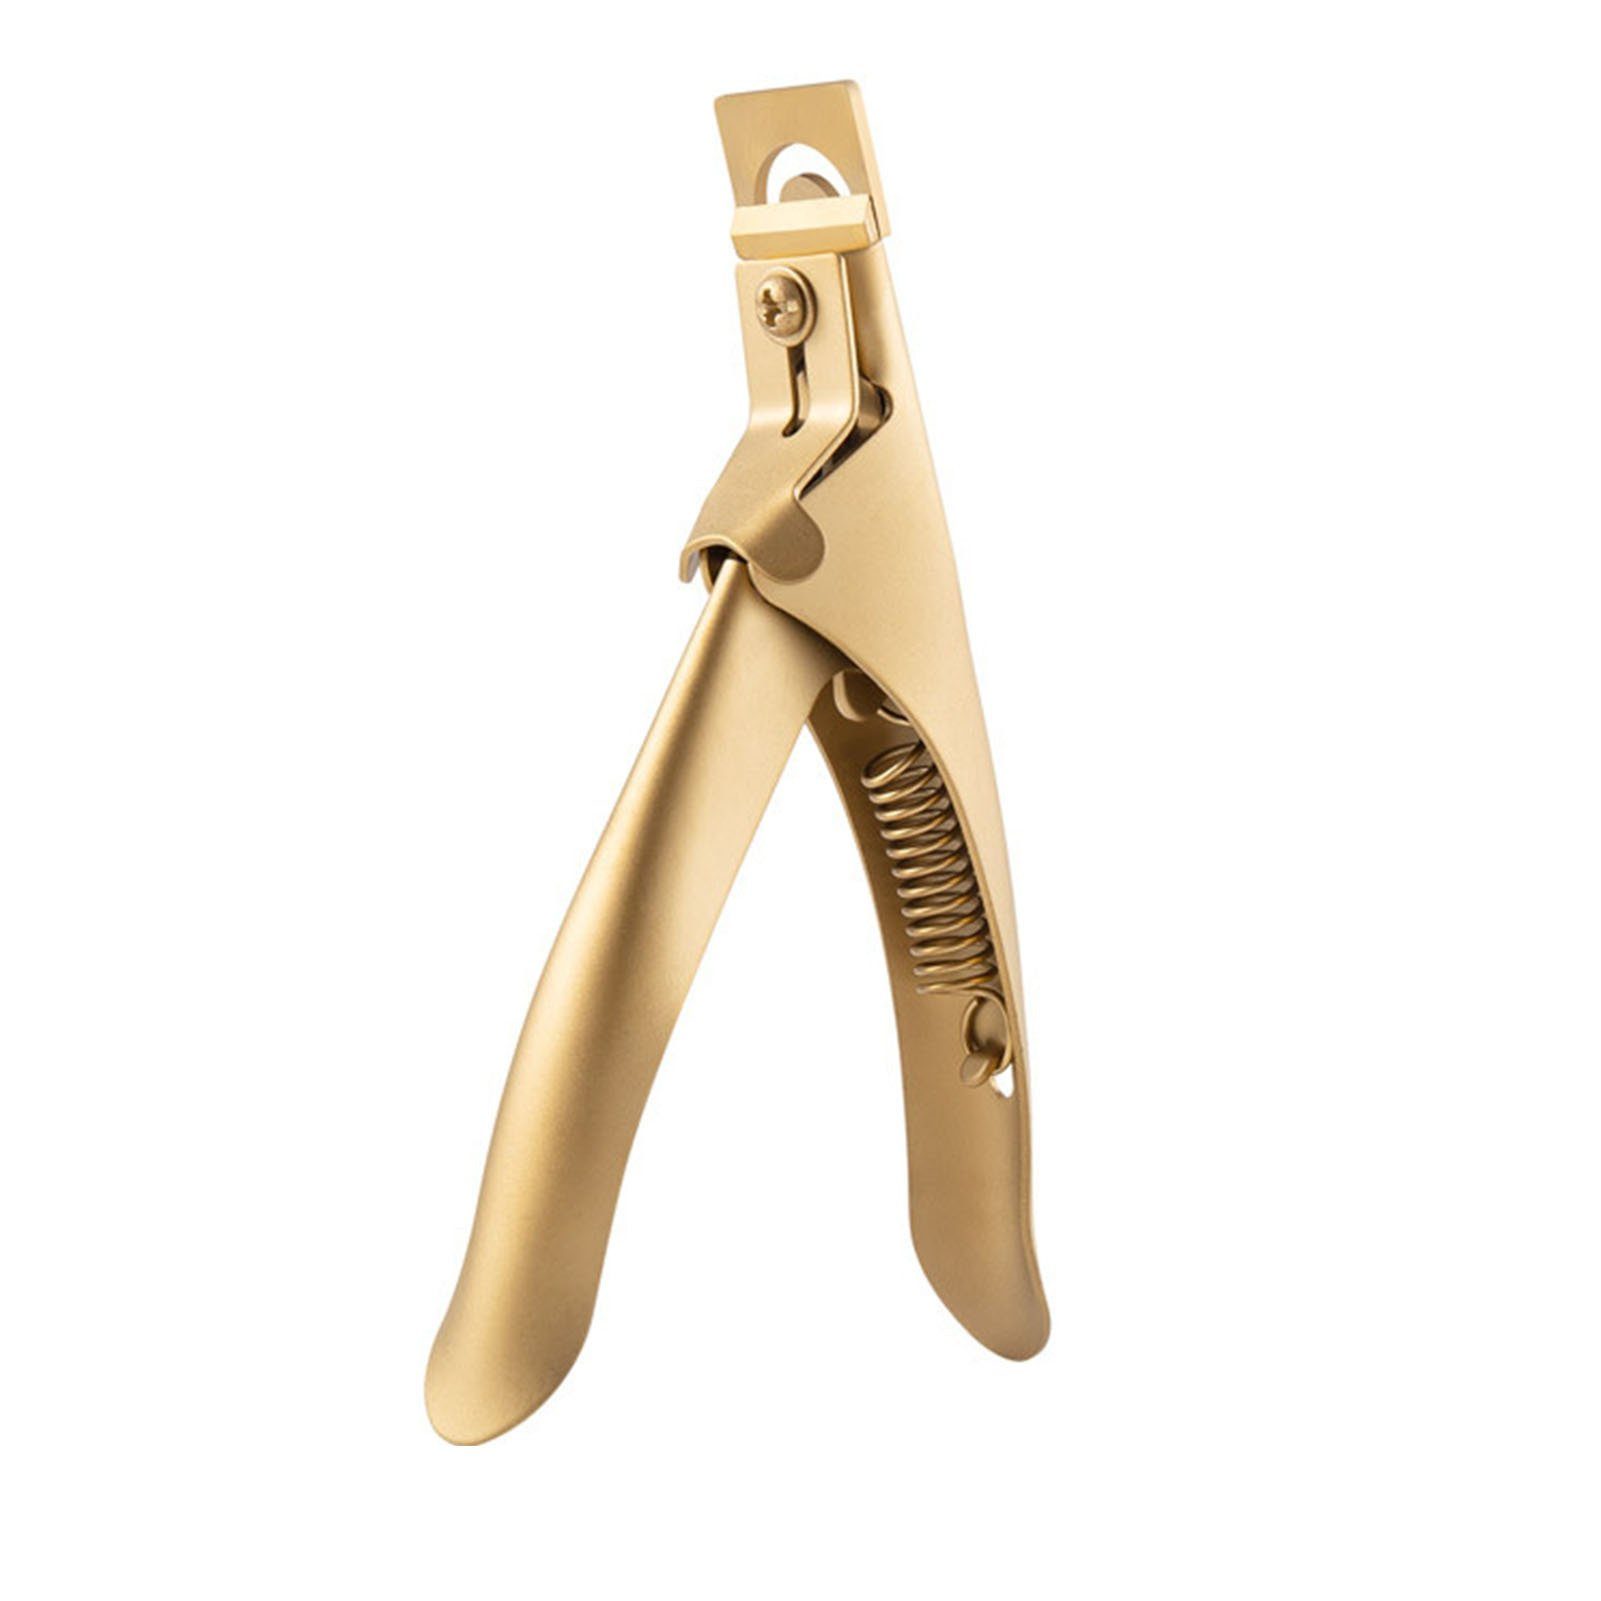 Blusmart Nagelknipser U-förmiger Design-Nagelschneider, gold Fußnagelknipser Zehennagelknipser, Arbeitssparendes, titanium